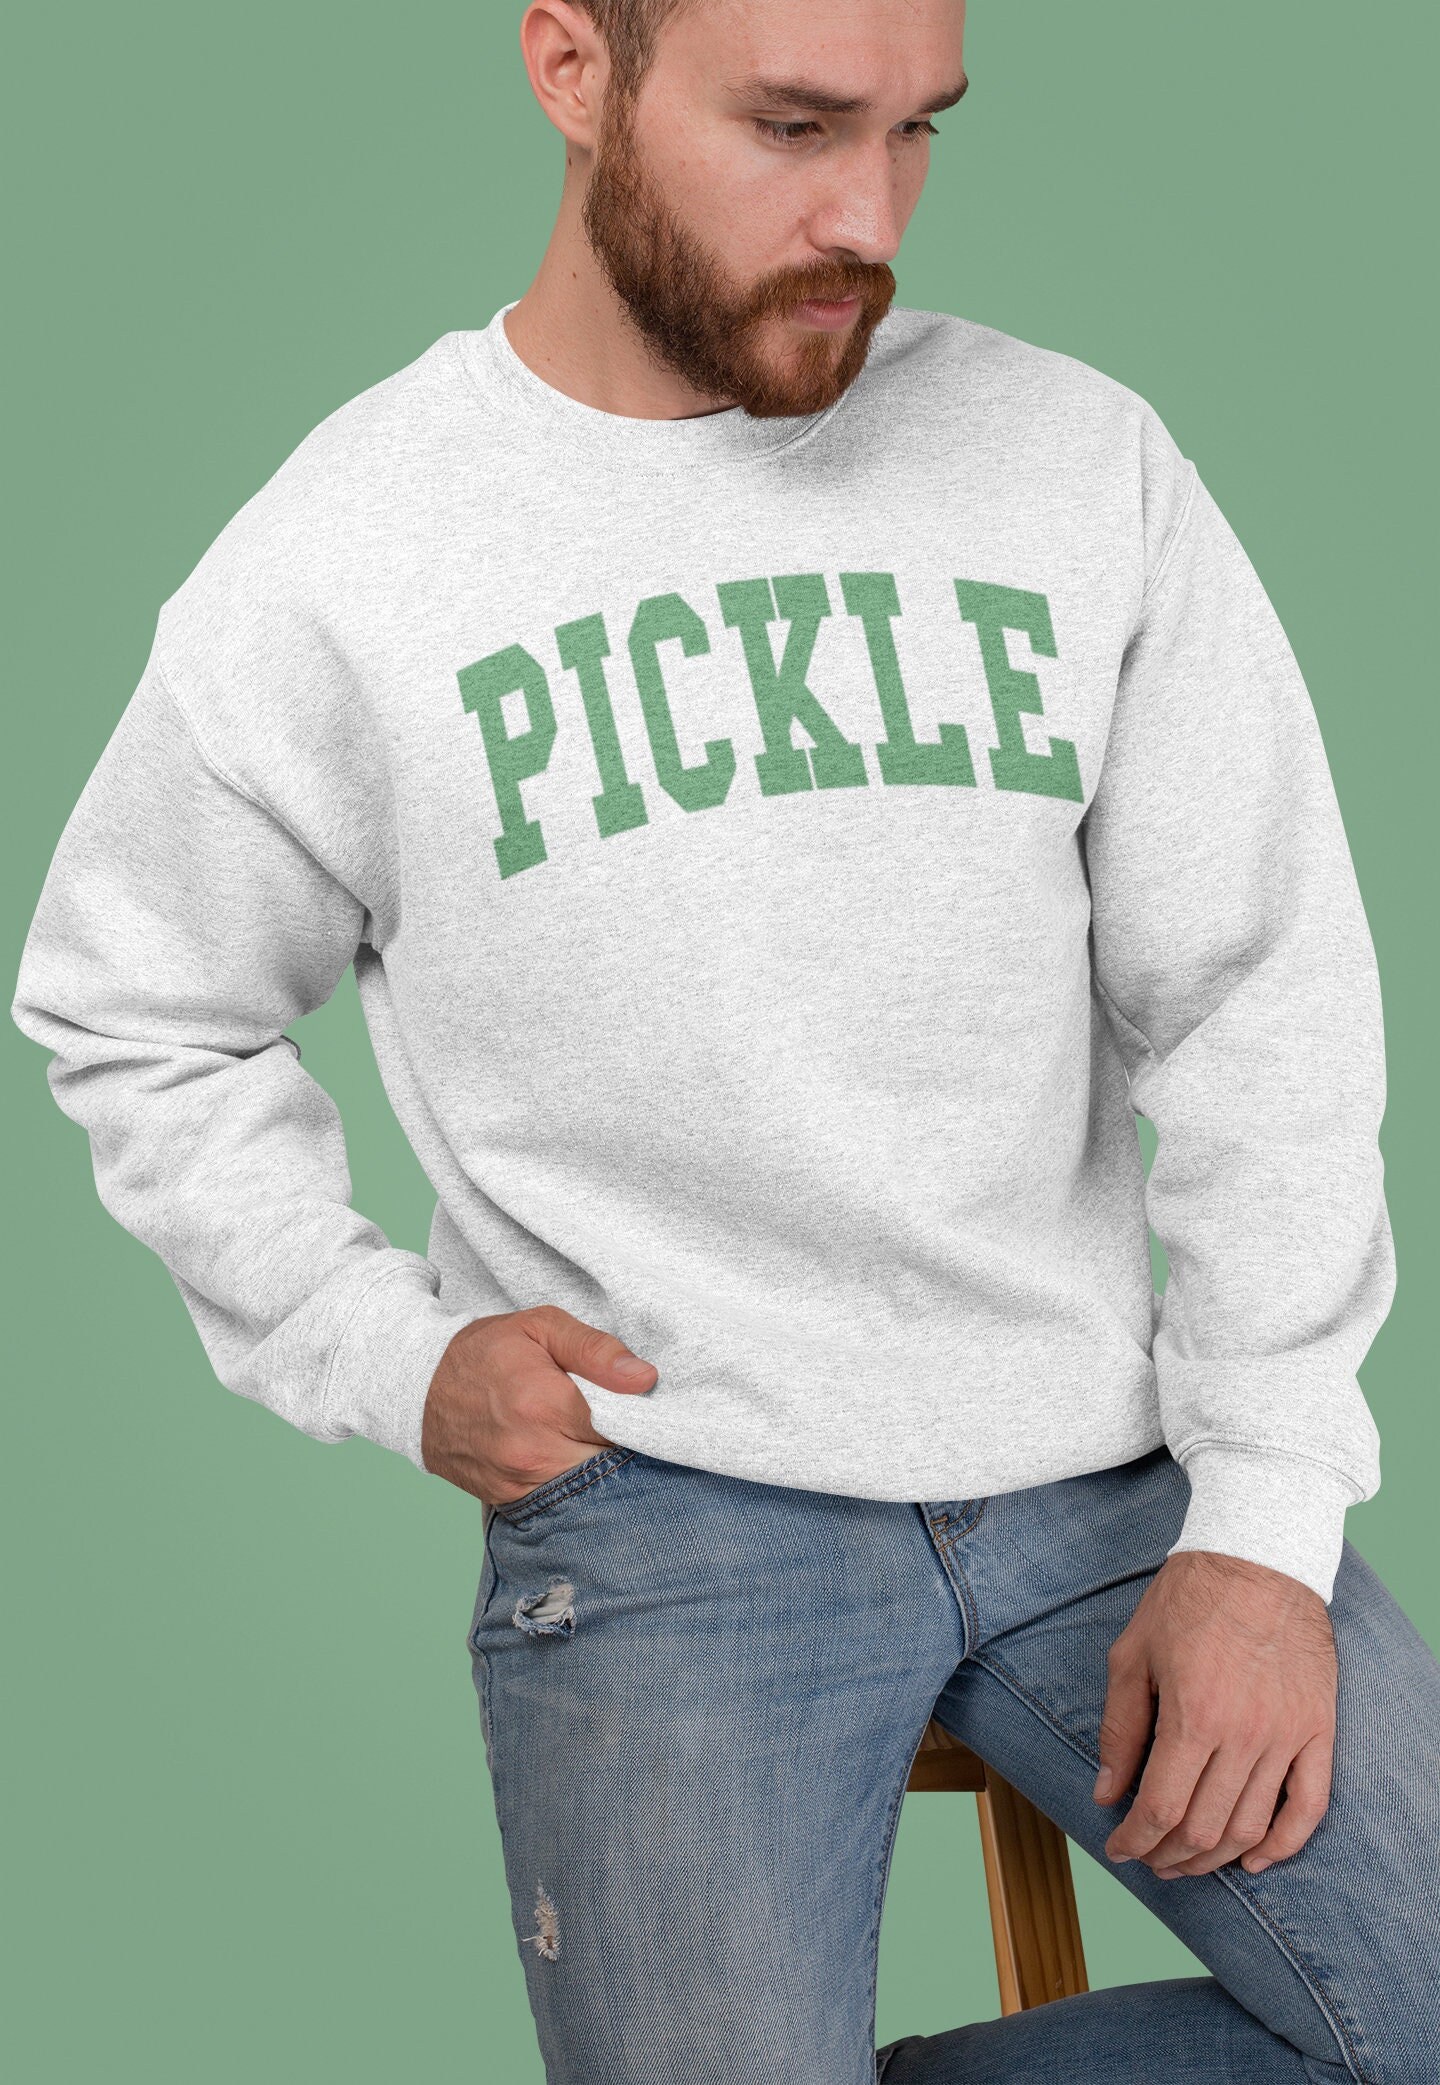 Pickle - Unisex Sweatshirt von TheRefinedSpirit